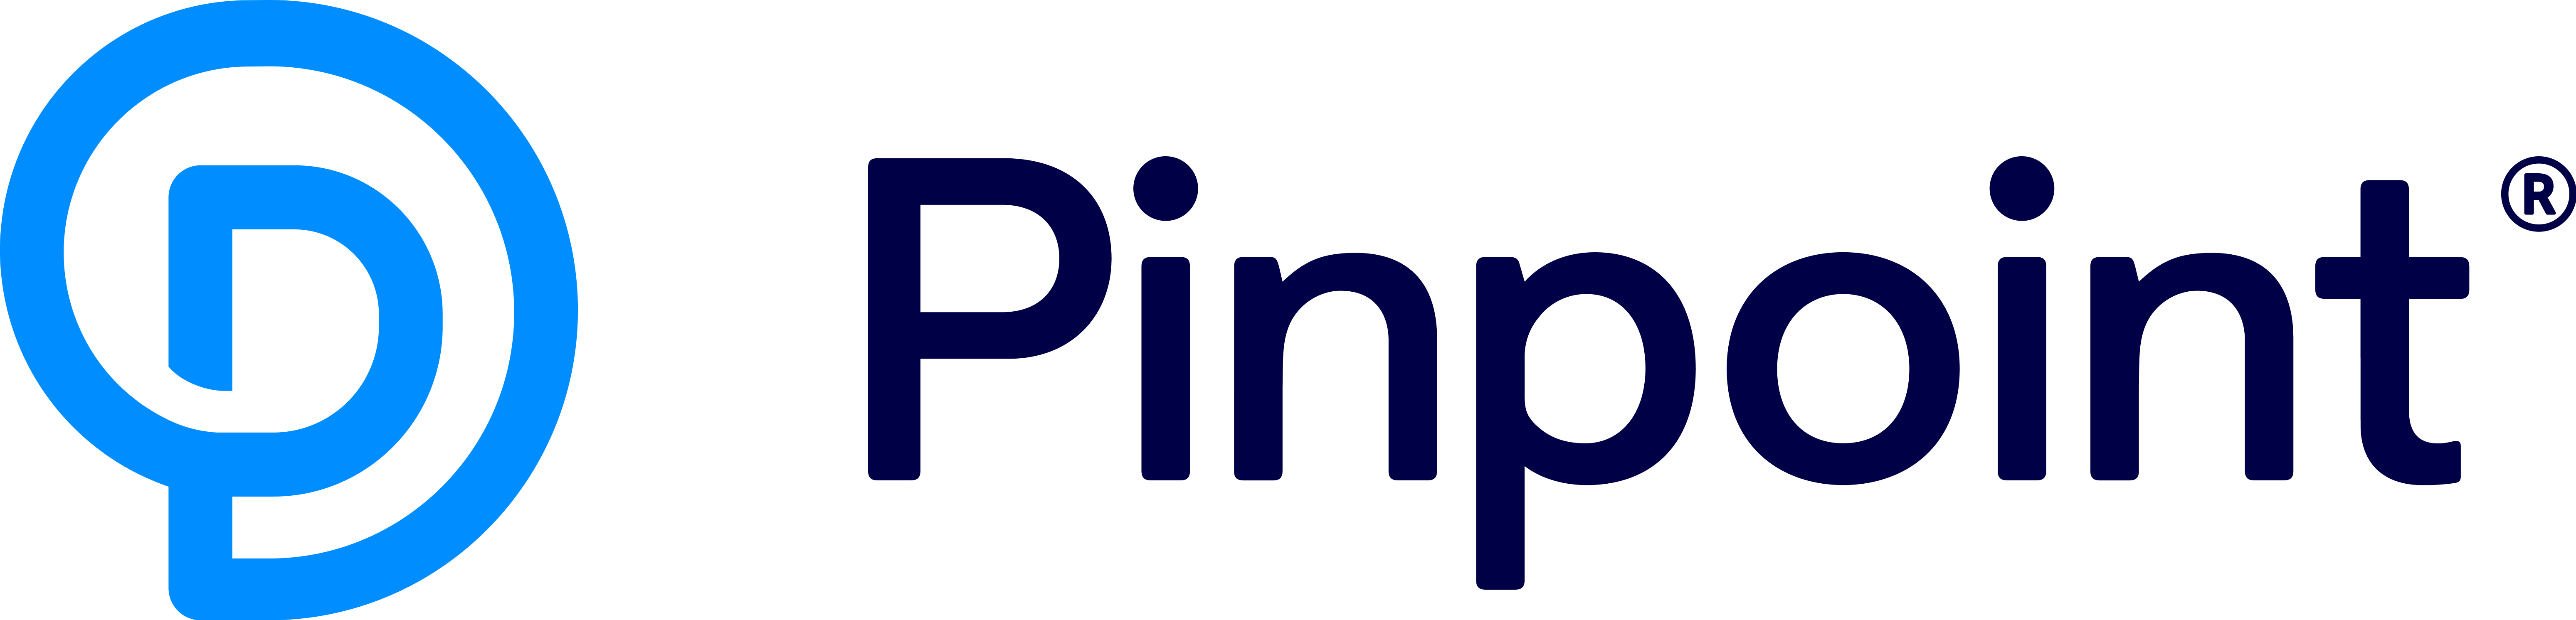 Pinpoint_LogoHorizontalBlue.png